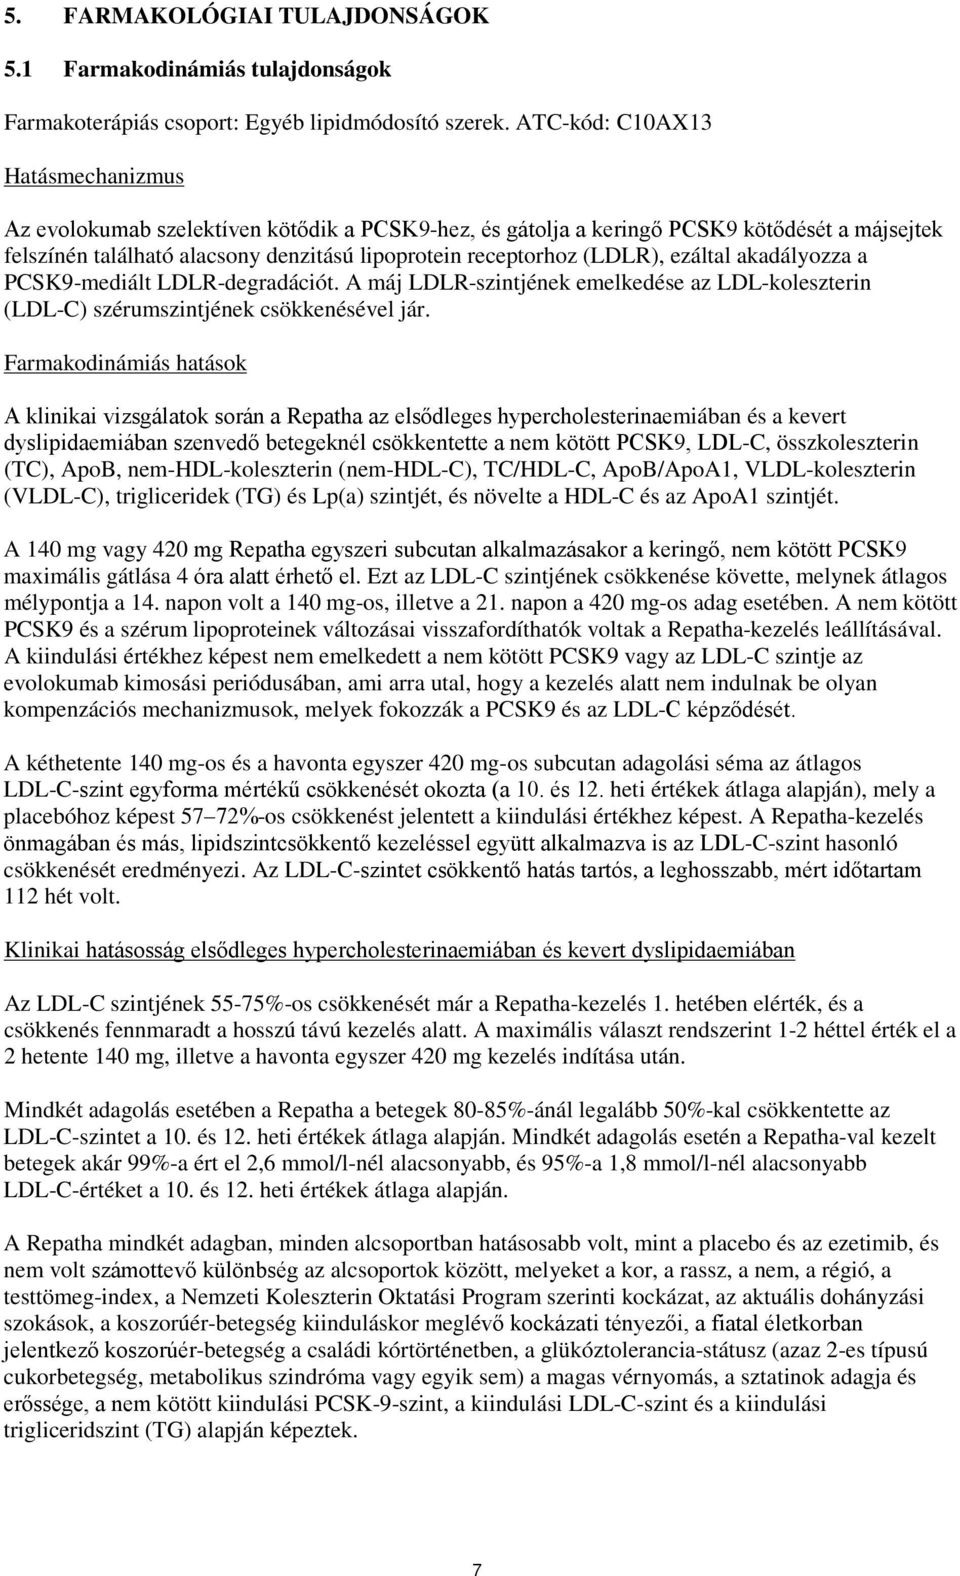 (LDLR), ezáltal akadályozza a PCSK9-mediált LDLR-degradációt. A máj LDLR-szintjének emelkedése az LDL-koleszterin (LDL-C) szérumszintjének csökkenésével jár.